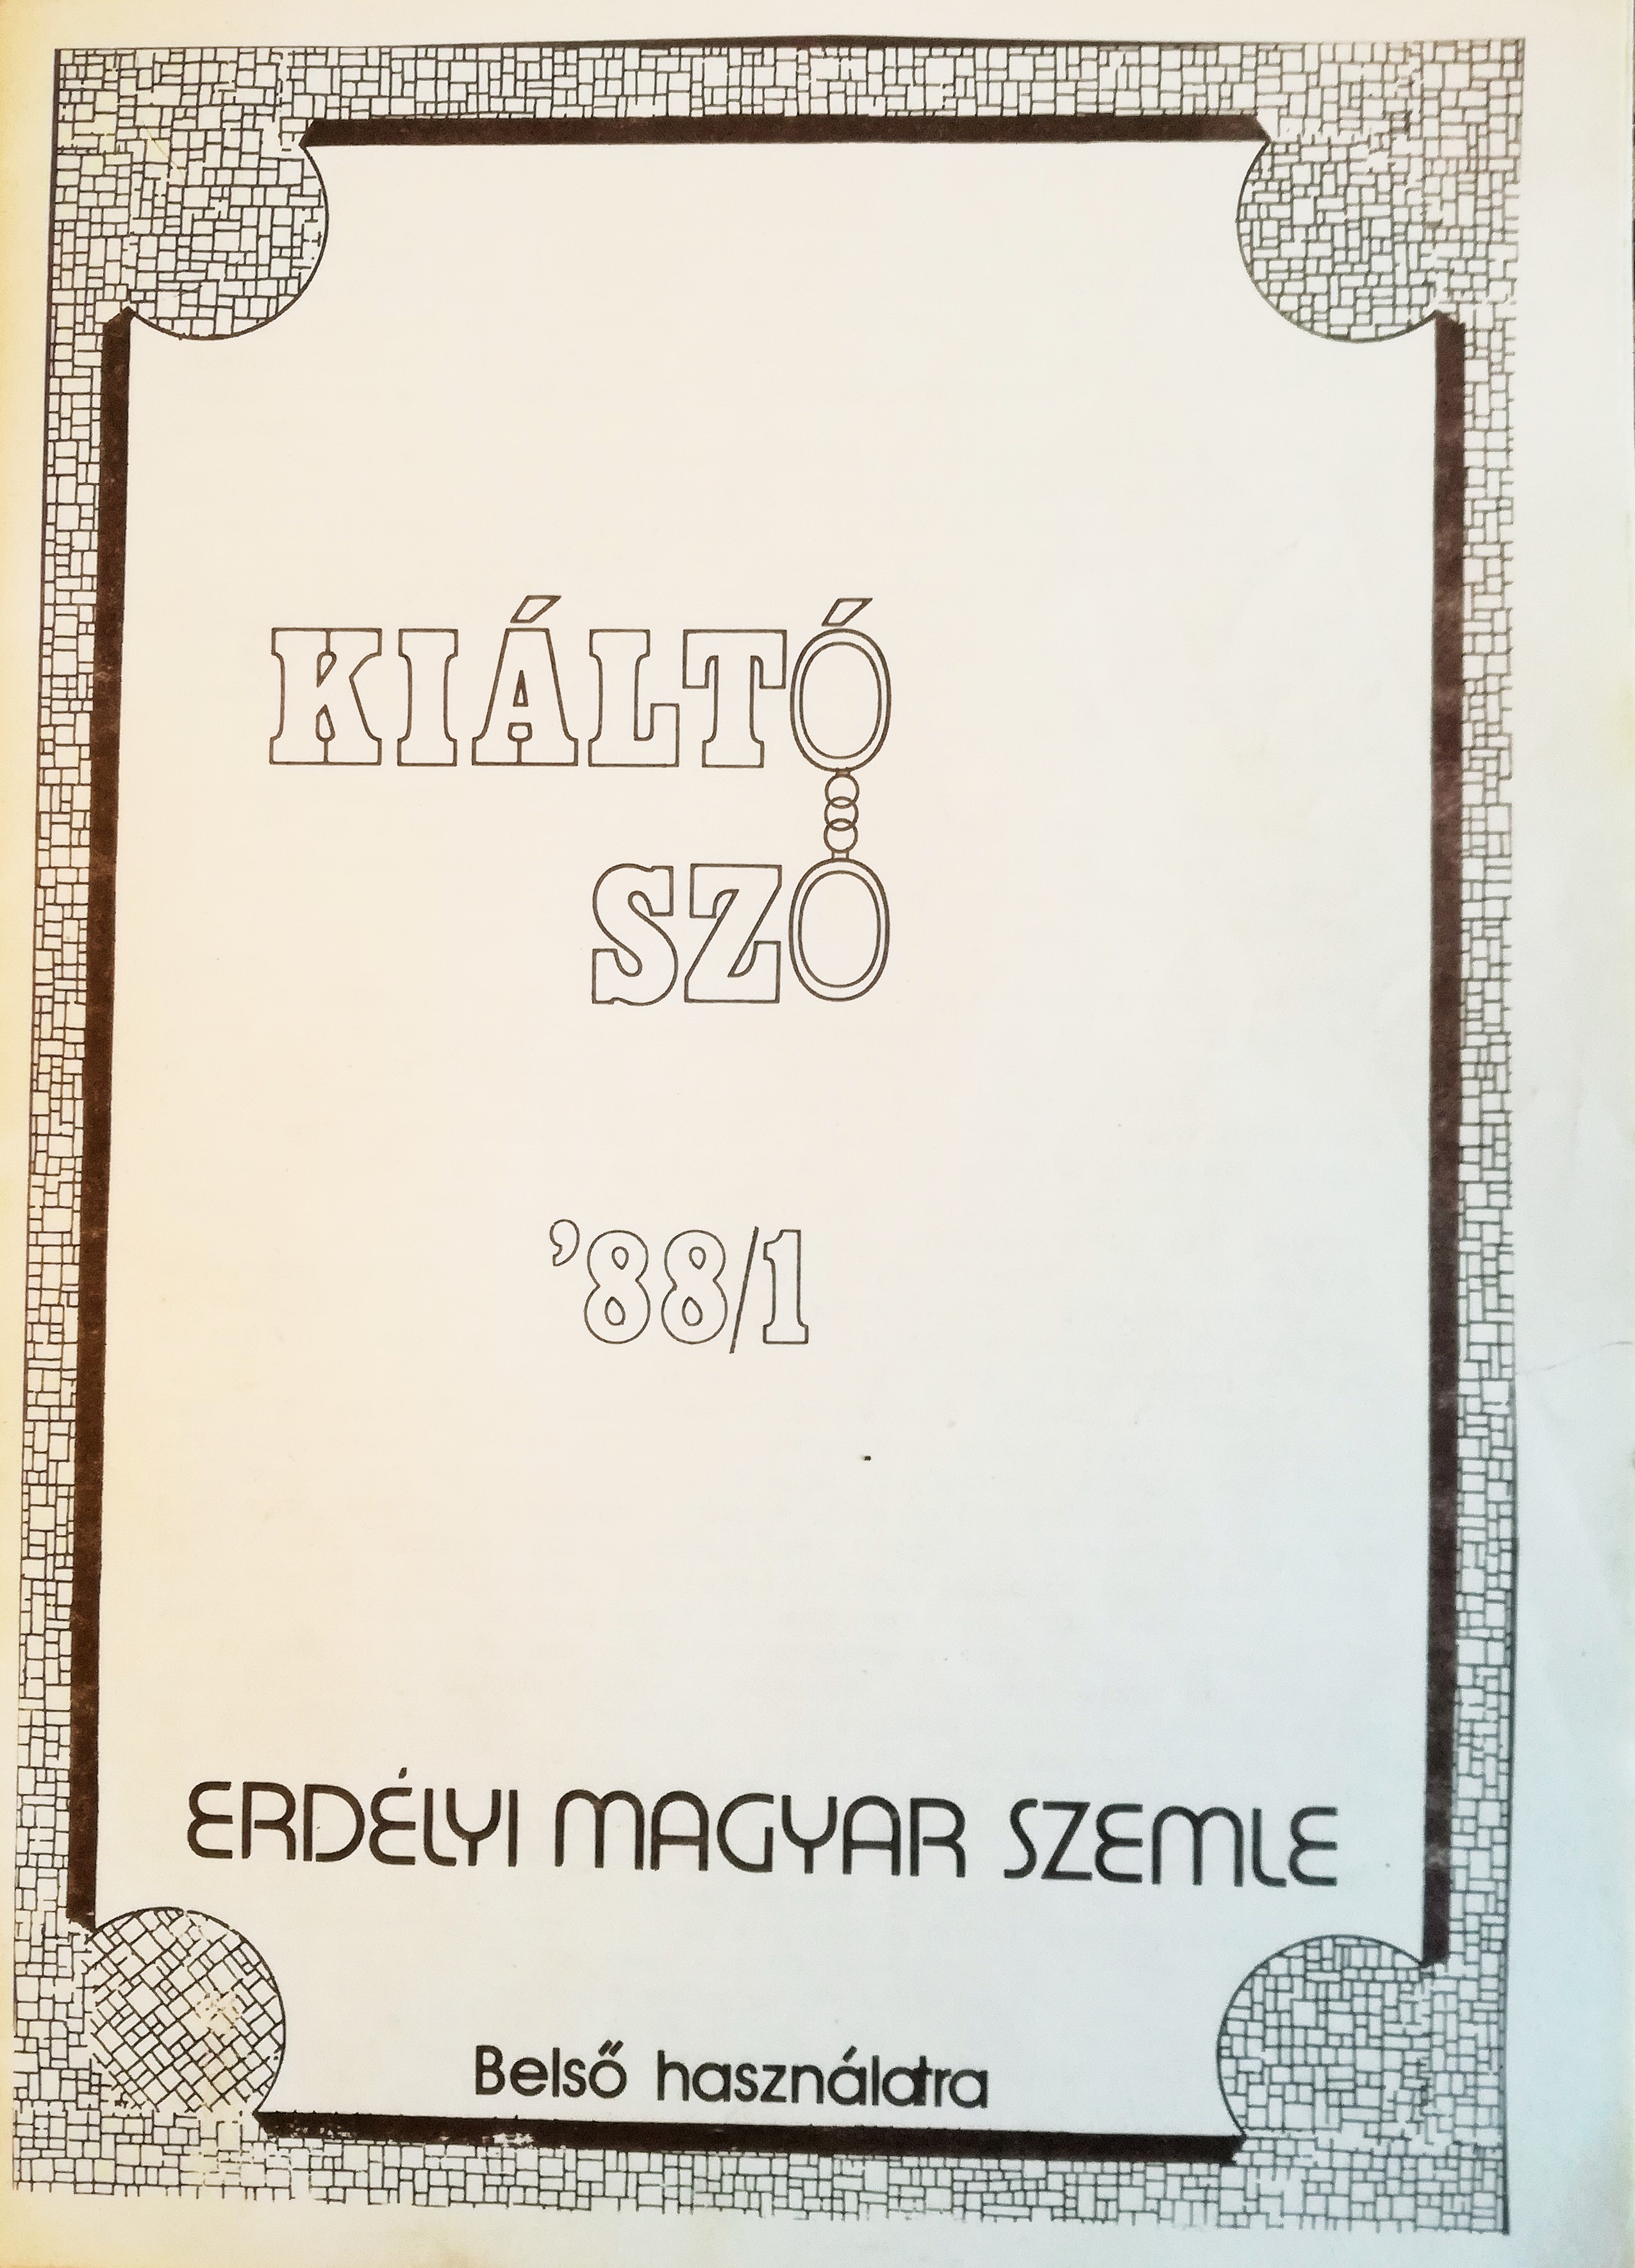 Coperta primului număr din publicaţia samizdat Kiáltó Szó 